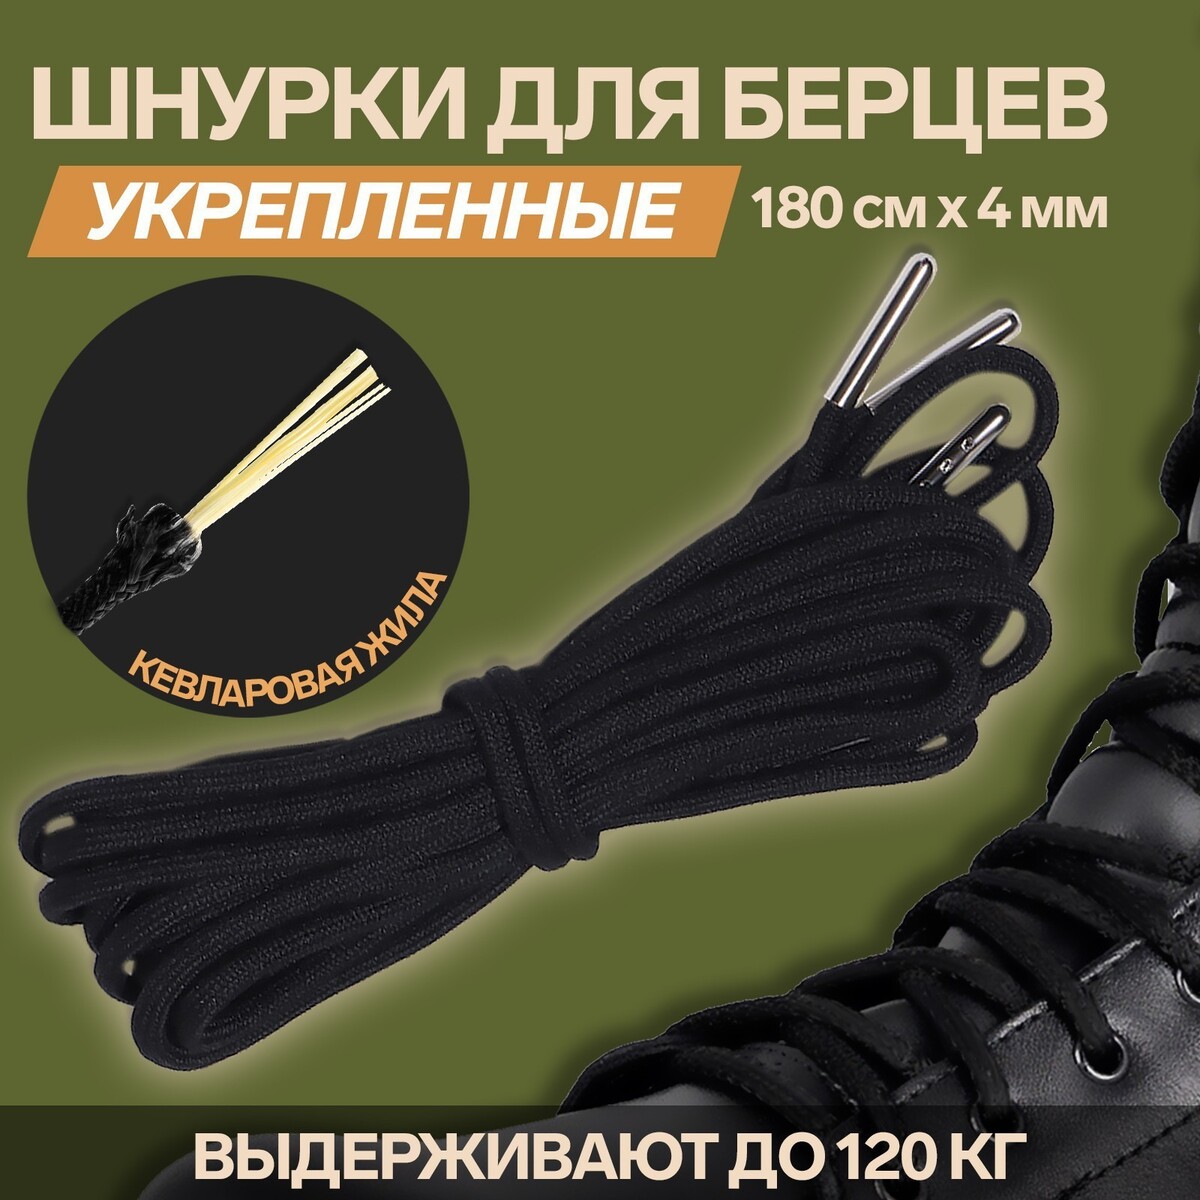 Шнурки для обуви, кевларовые, пара, круглые, d = 4 мм, 180 см, цвет черный шнурки для обуви пара круглые d 5 мм 110 см темно серый